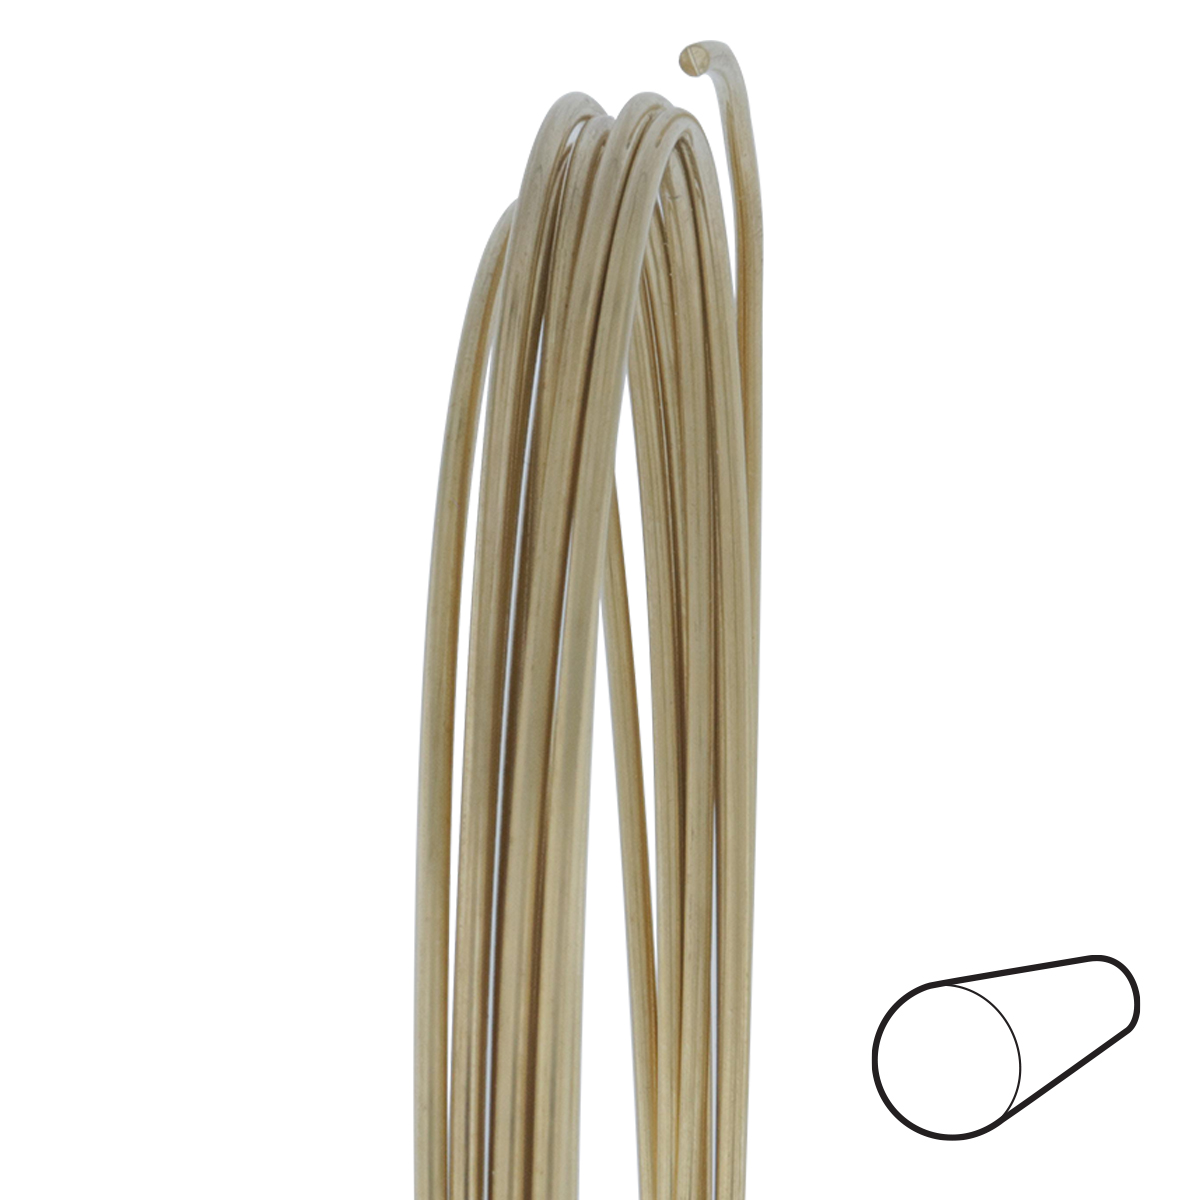 14 Gauge Round Dead Soft Copper Wire: Wire Jewelry, Wire Wrap Tutorials